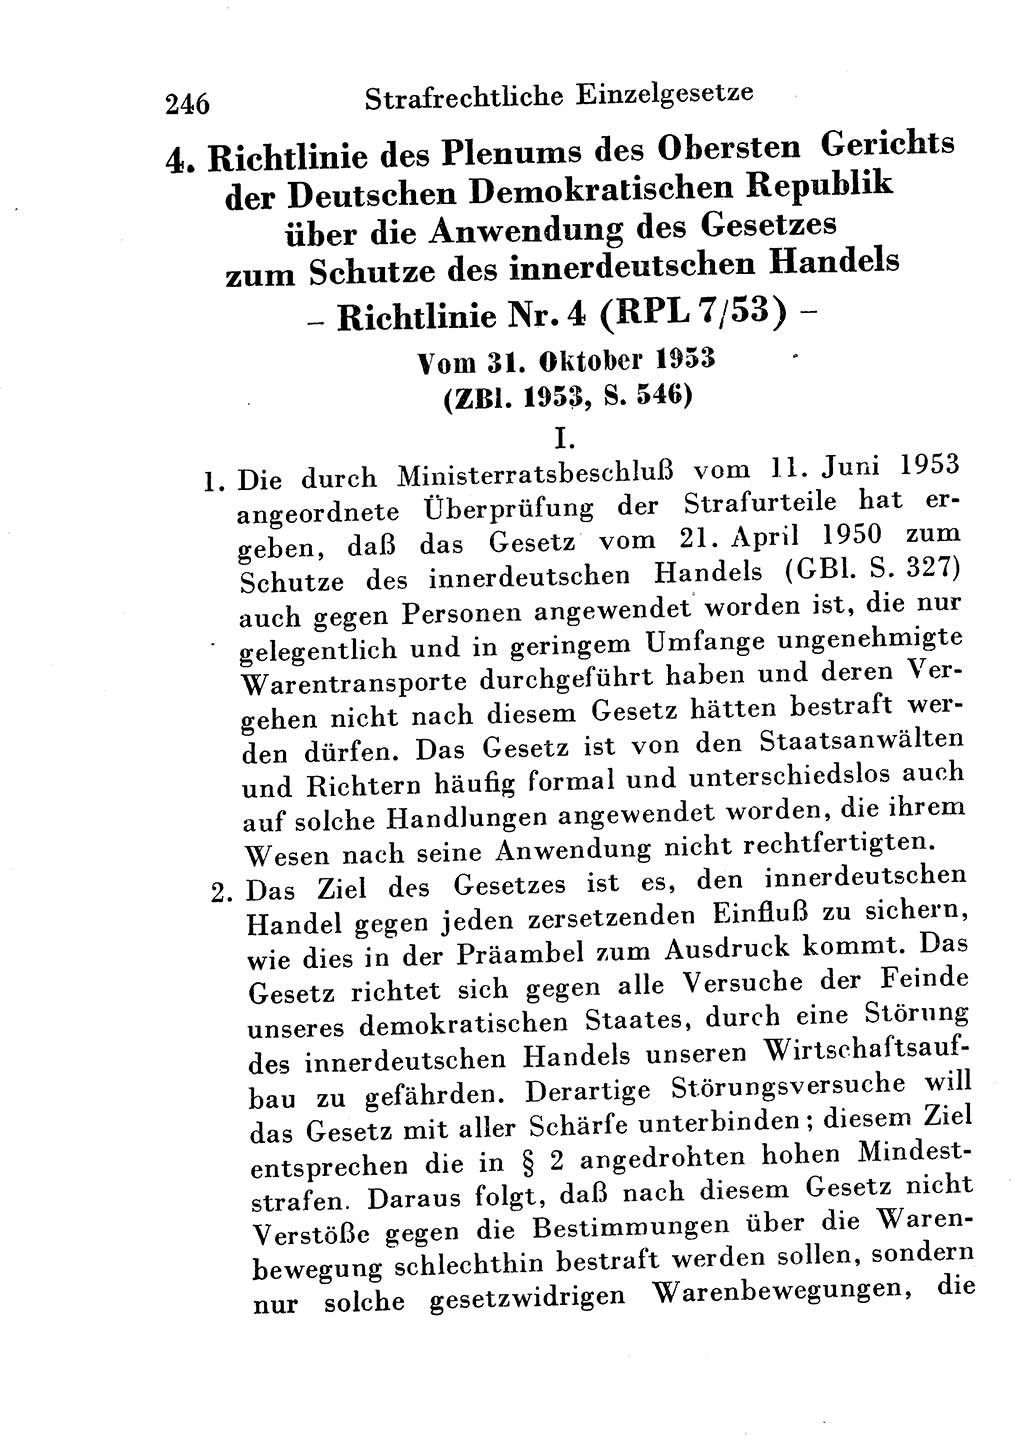 Strafgesetzbuch (StGB) und andere Strafgesetze [Deutsche Demokratische Republik (DDR)] 1954, Seite 246 (StGB Strafges. DDR 1954, S. 246)